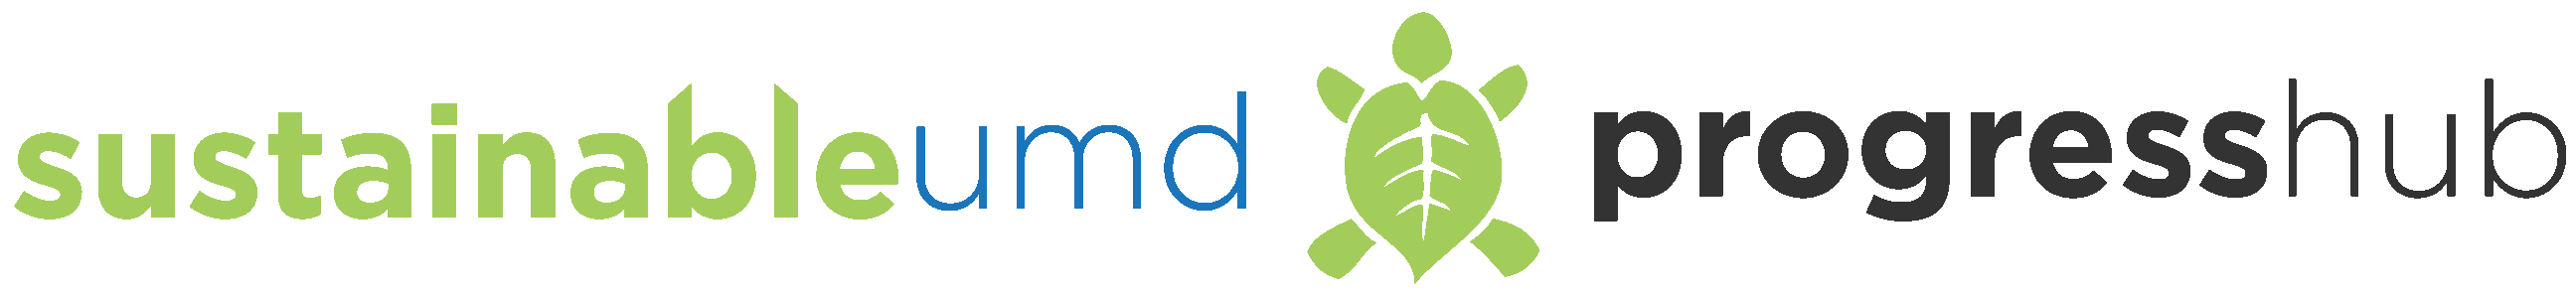 Office of Sustainability logo